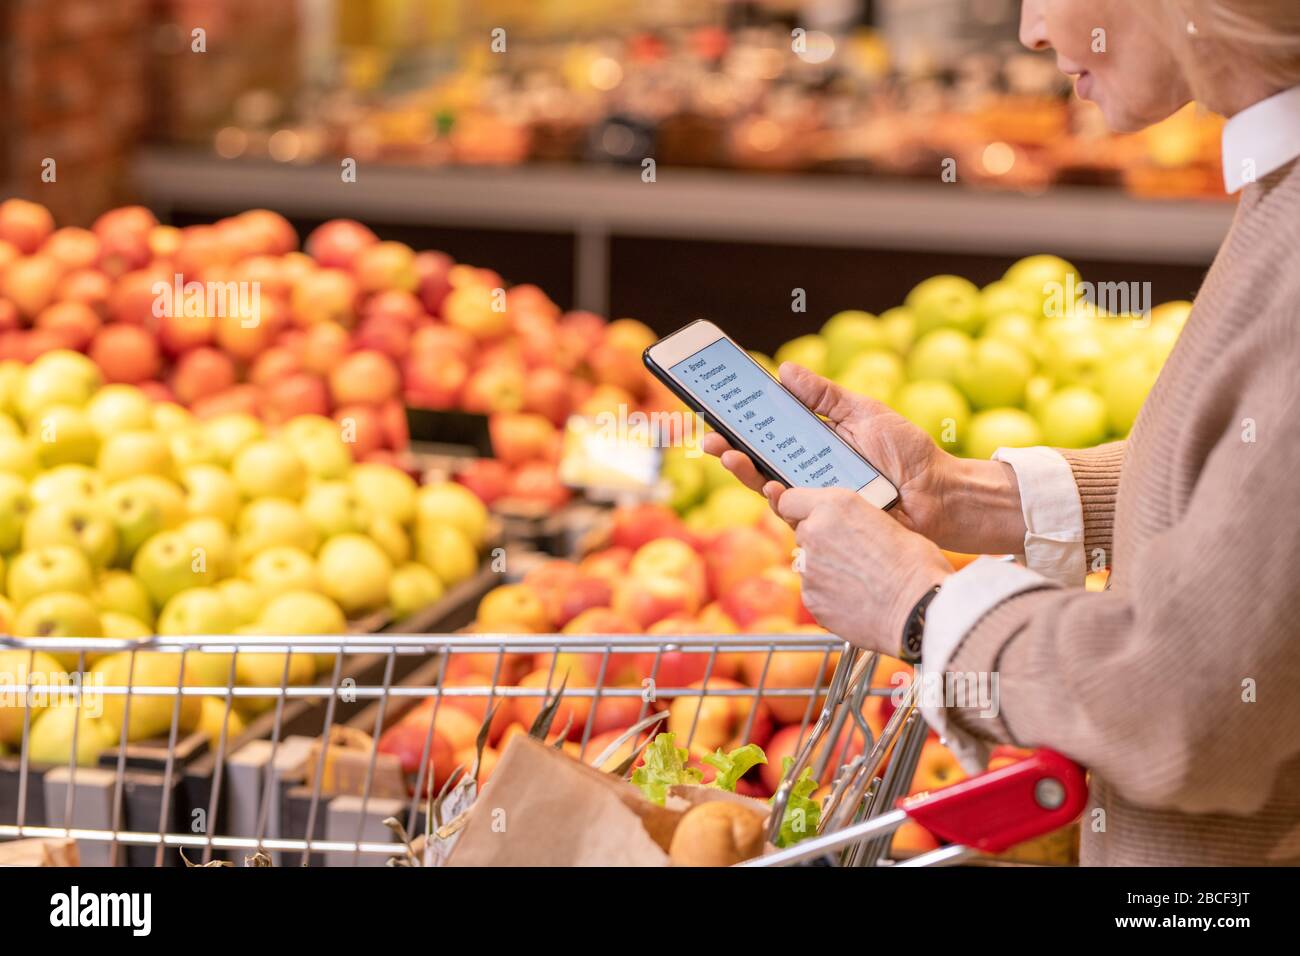 Moderne, reife weibliche Kundin scrollt durch die Liste der Lebensmittelprodukte, die im Supermarkt gekauft werden sollen, während sie an der Fruchtanzeige vorbeigeht Stockfoto